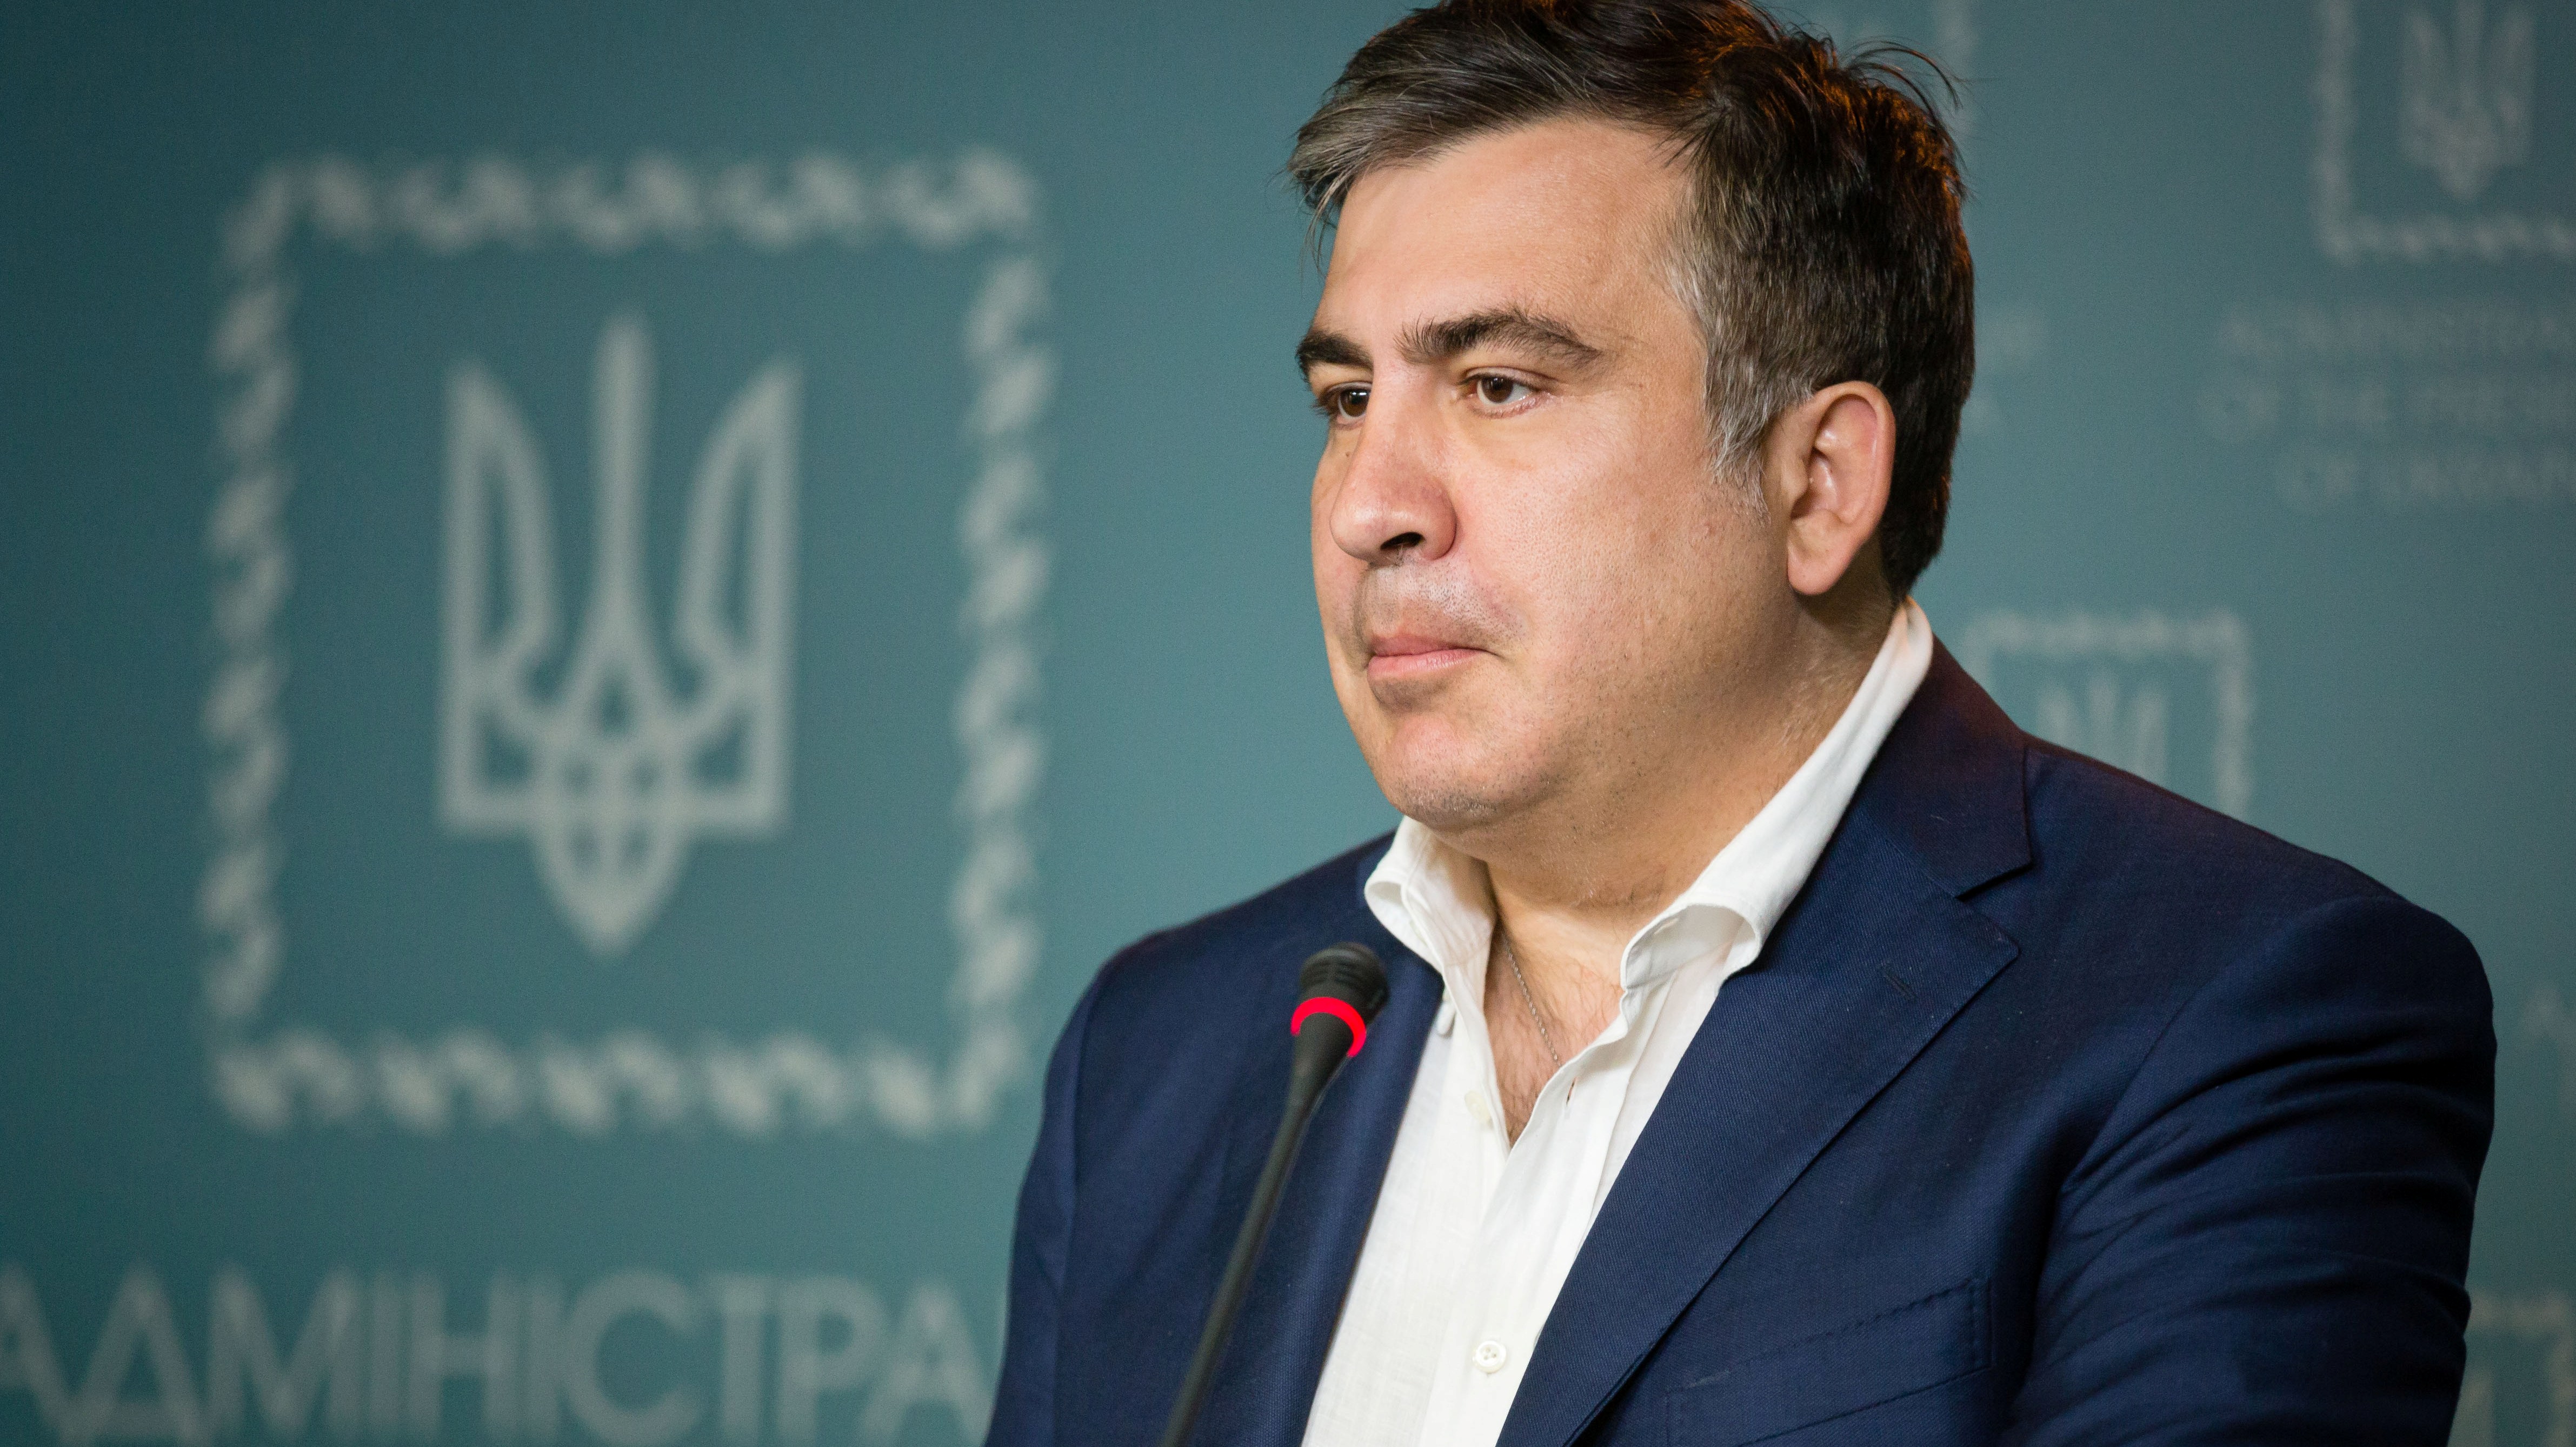 Обнаглевшие рожи с миллиардами в декларациях: Саакашвили объяснил, что повлияло на его окончательное решение об отставке